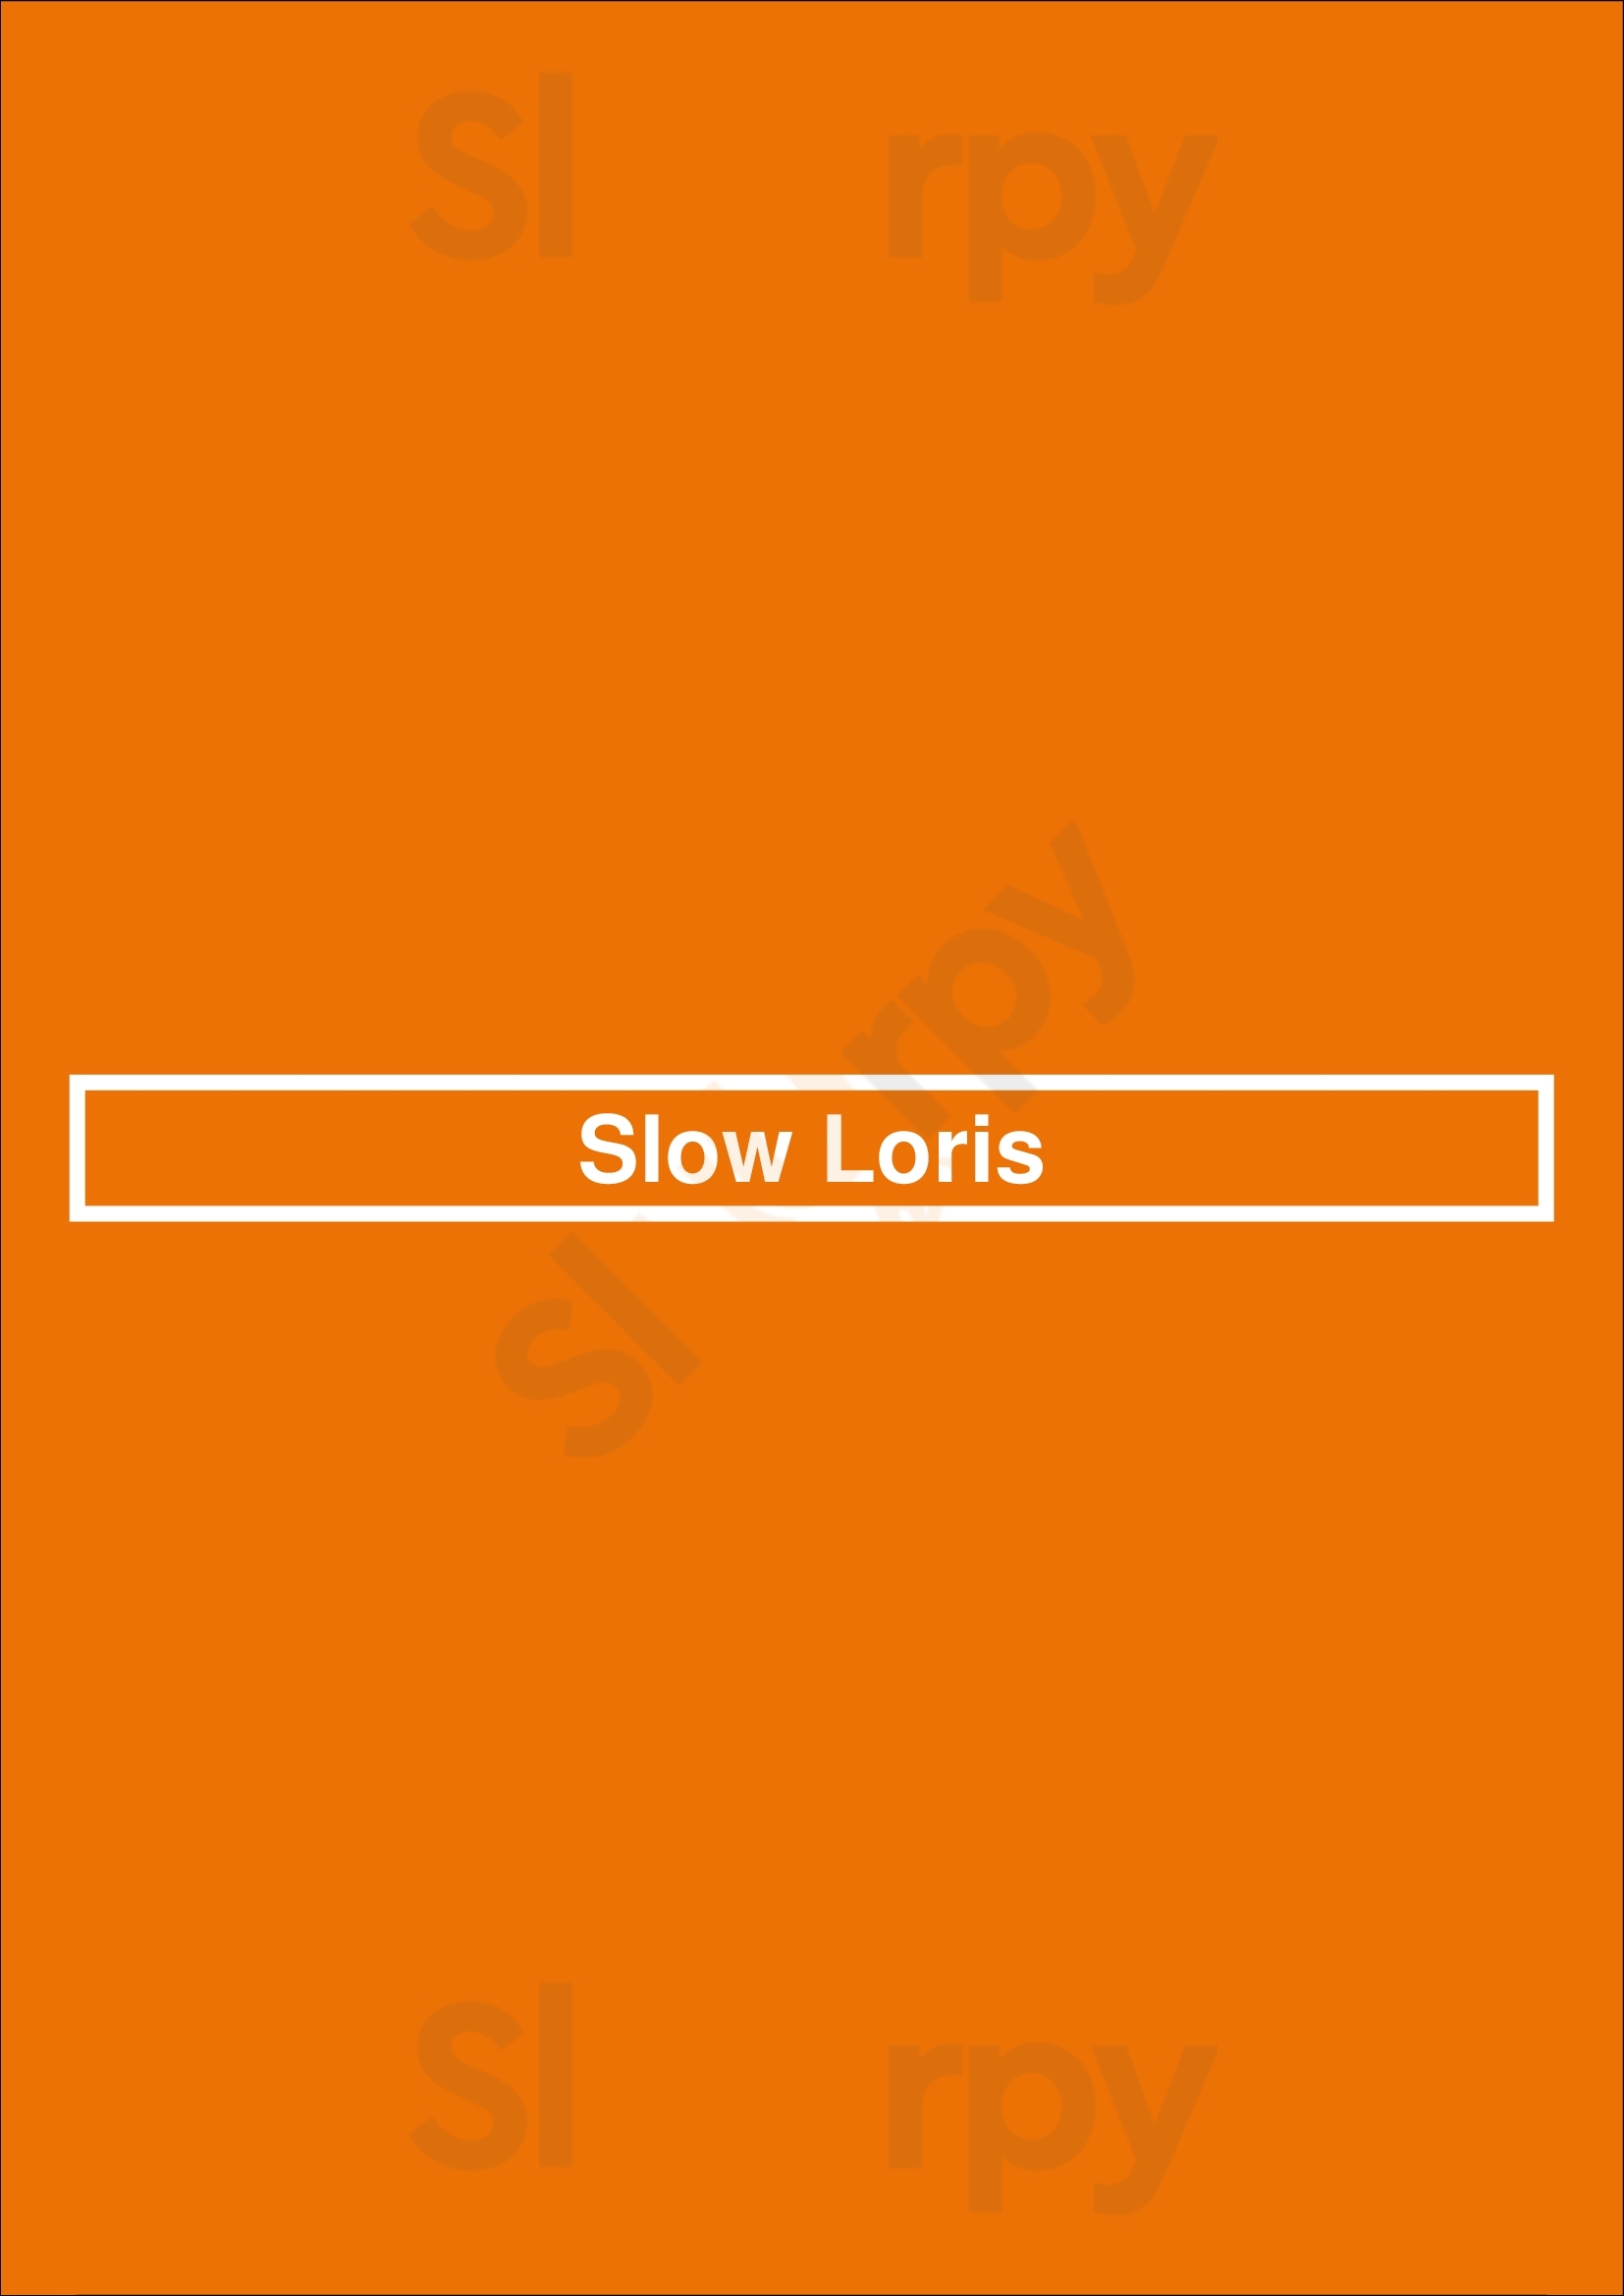 Slow Loris Brooklyn Menu - 1